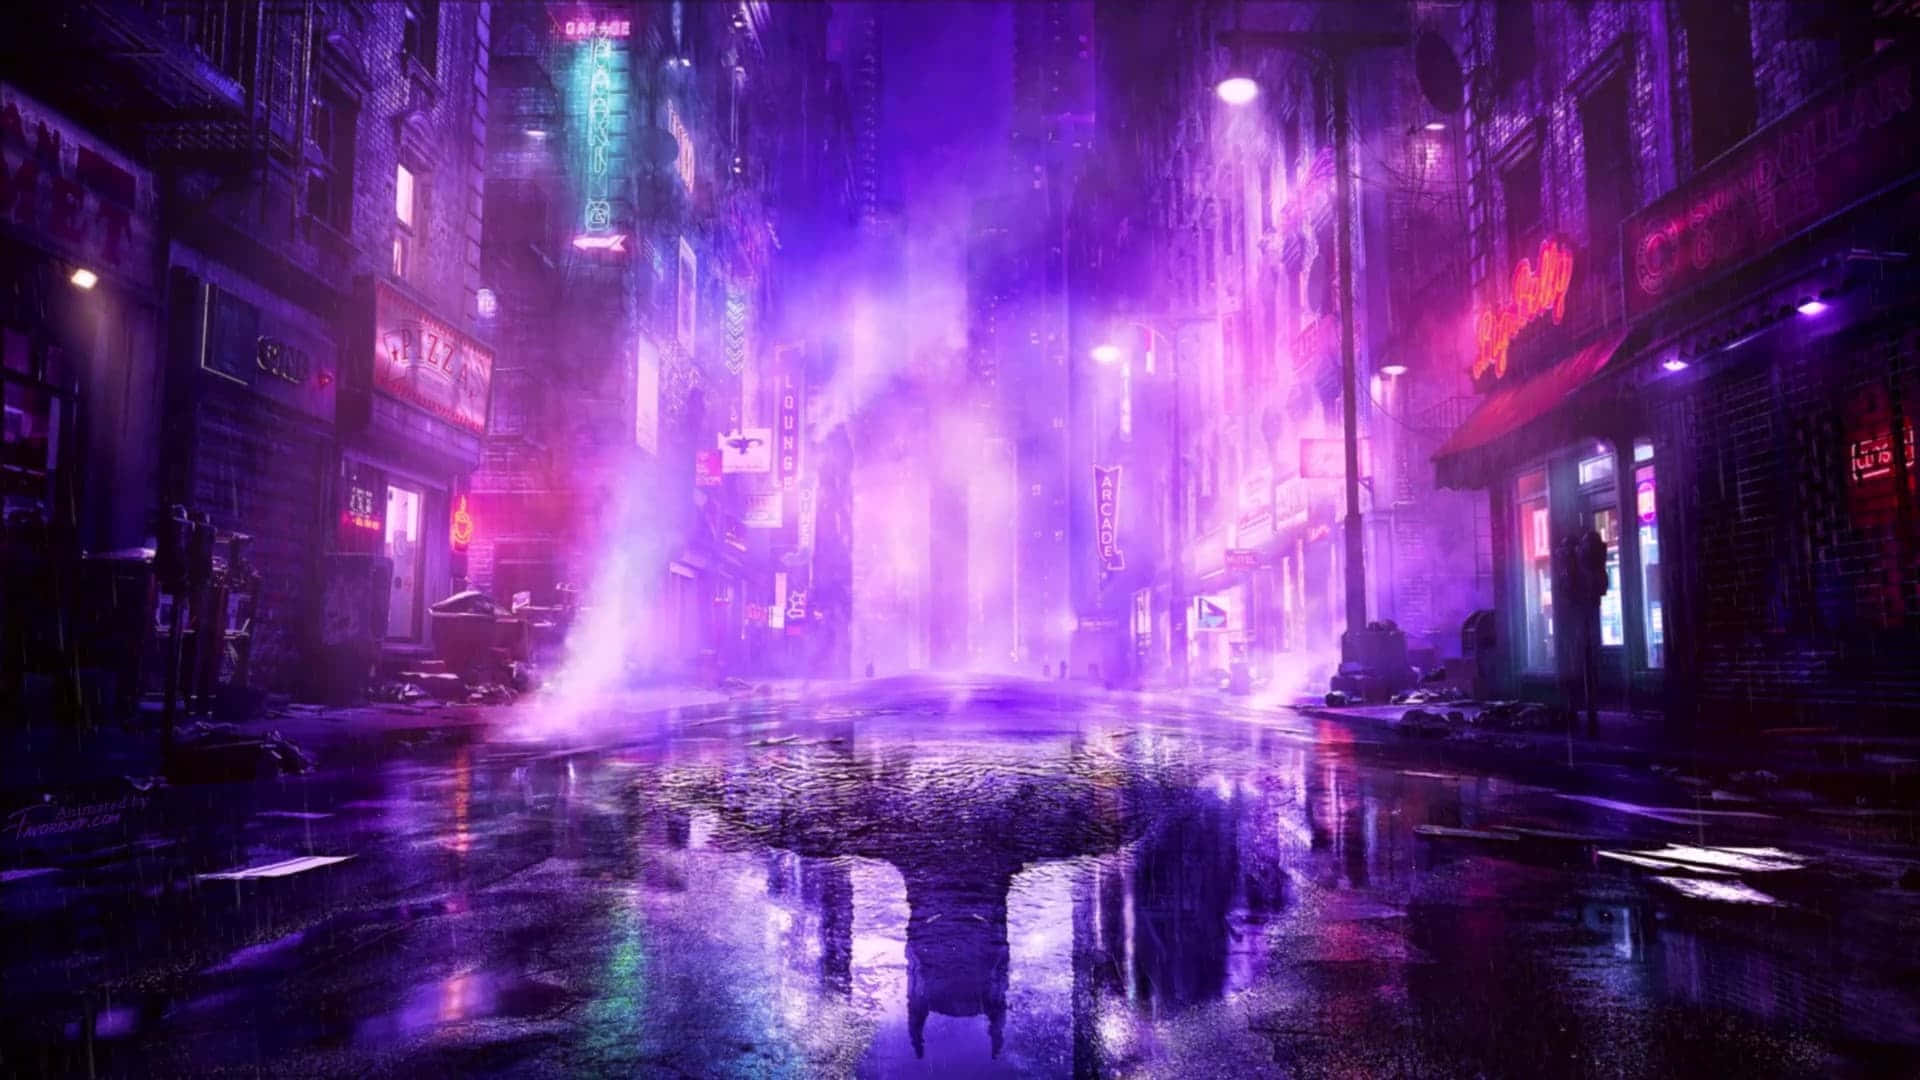 Hintergrundvon Gotham City 1920 X 1080